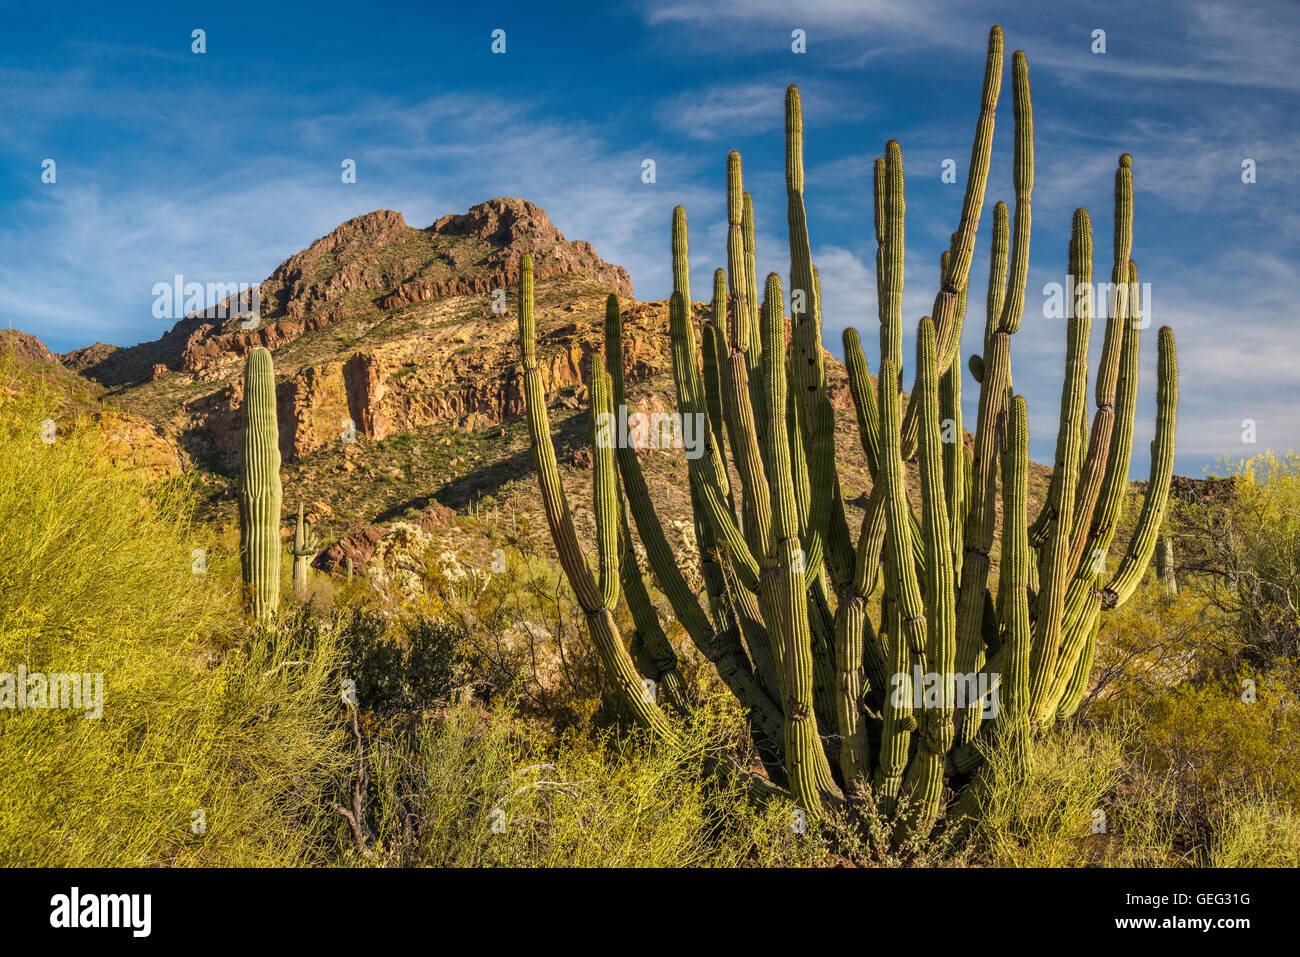 Orgelpfeife Saguaro Kakteen Diablo Berge Ajo Mountain Drive Sonora Wuste Organ Pipe Cactus National Monument Arizona Stockfotografie Alamy